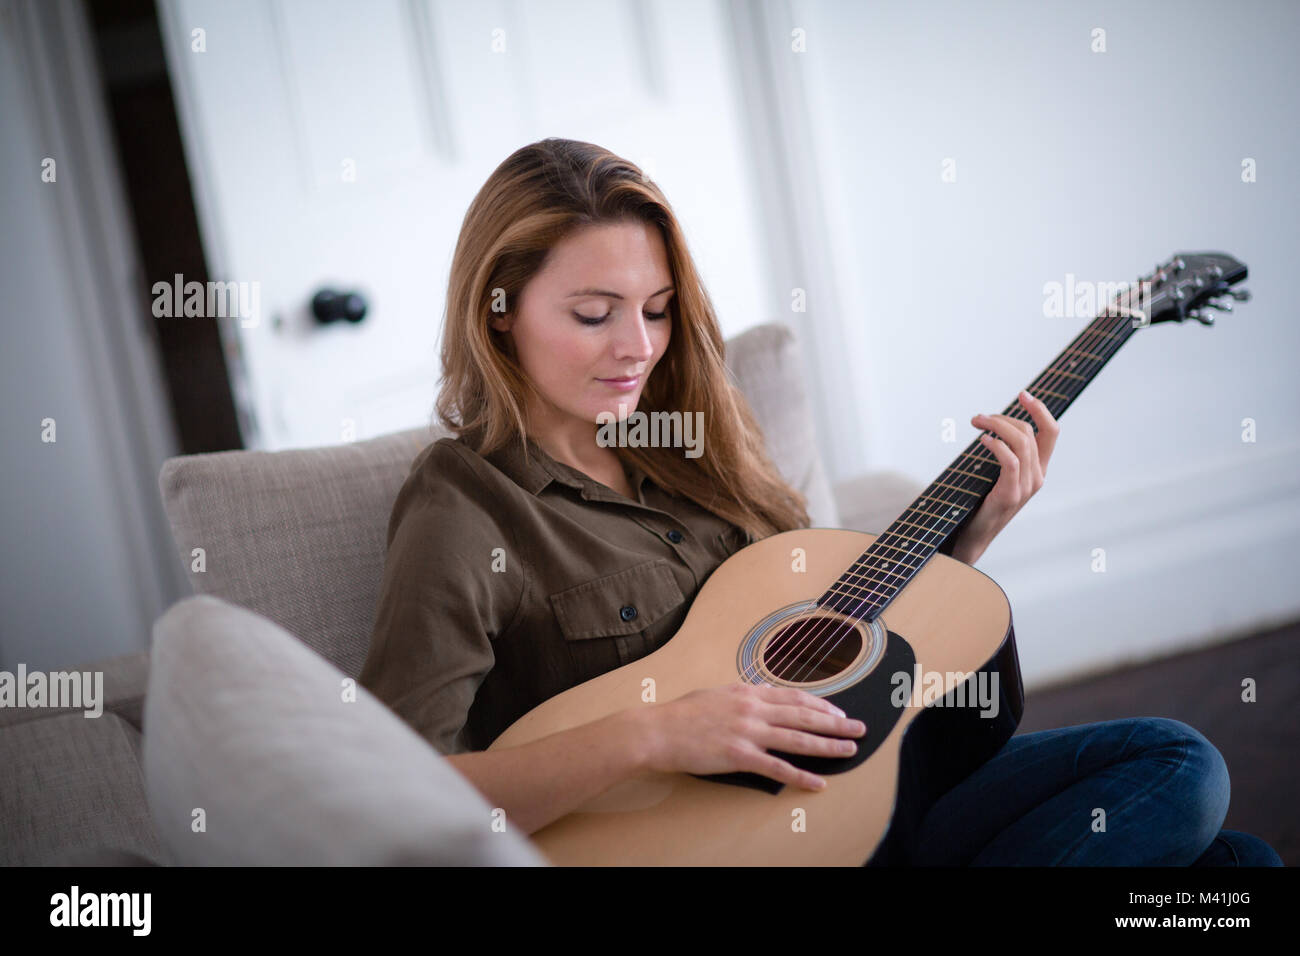 Les jeunes femelles adultes playing acoustic guitar Banque D'Images